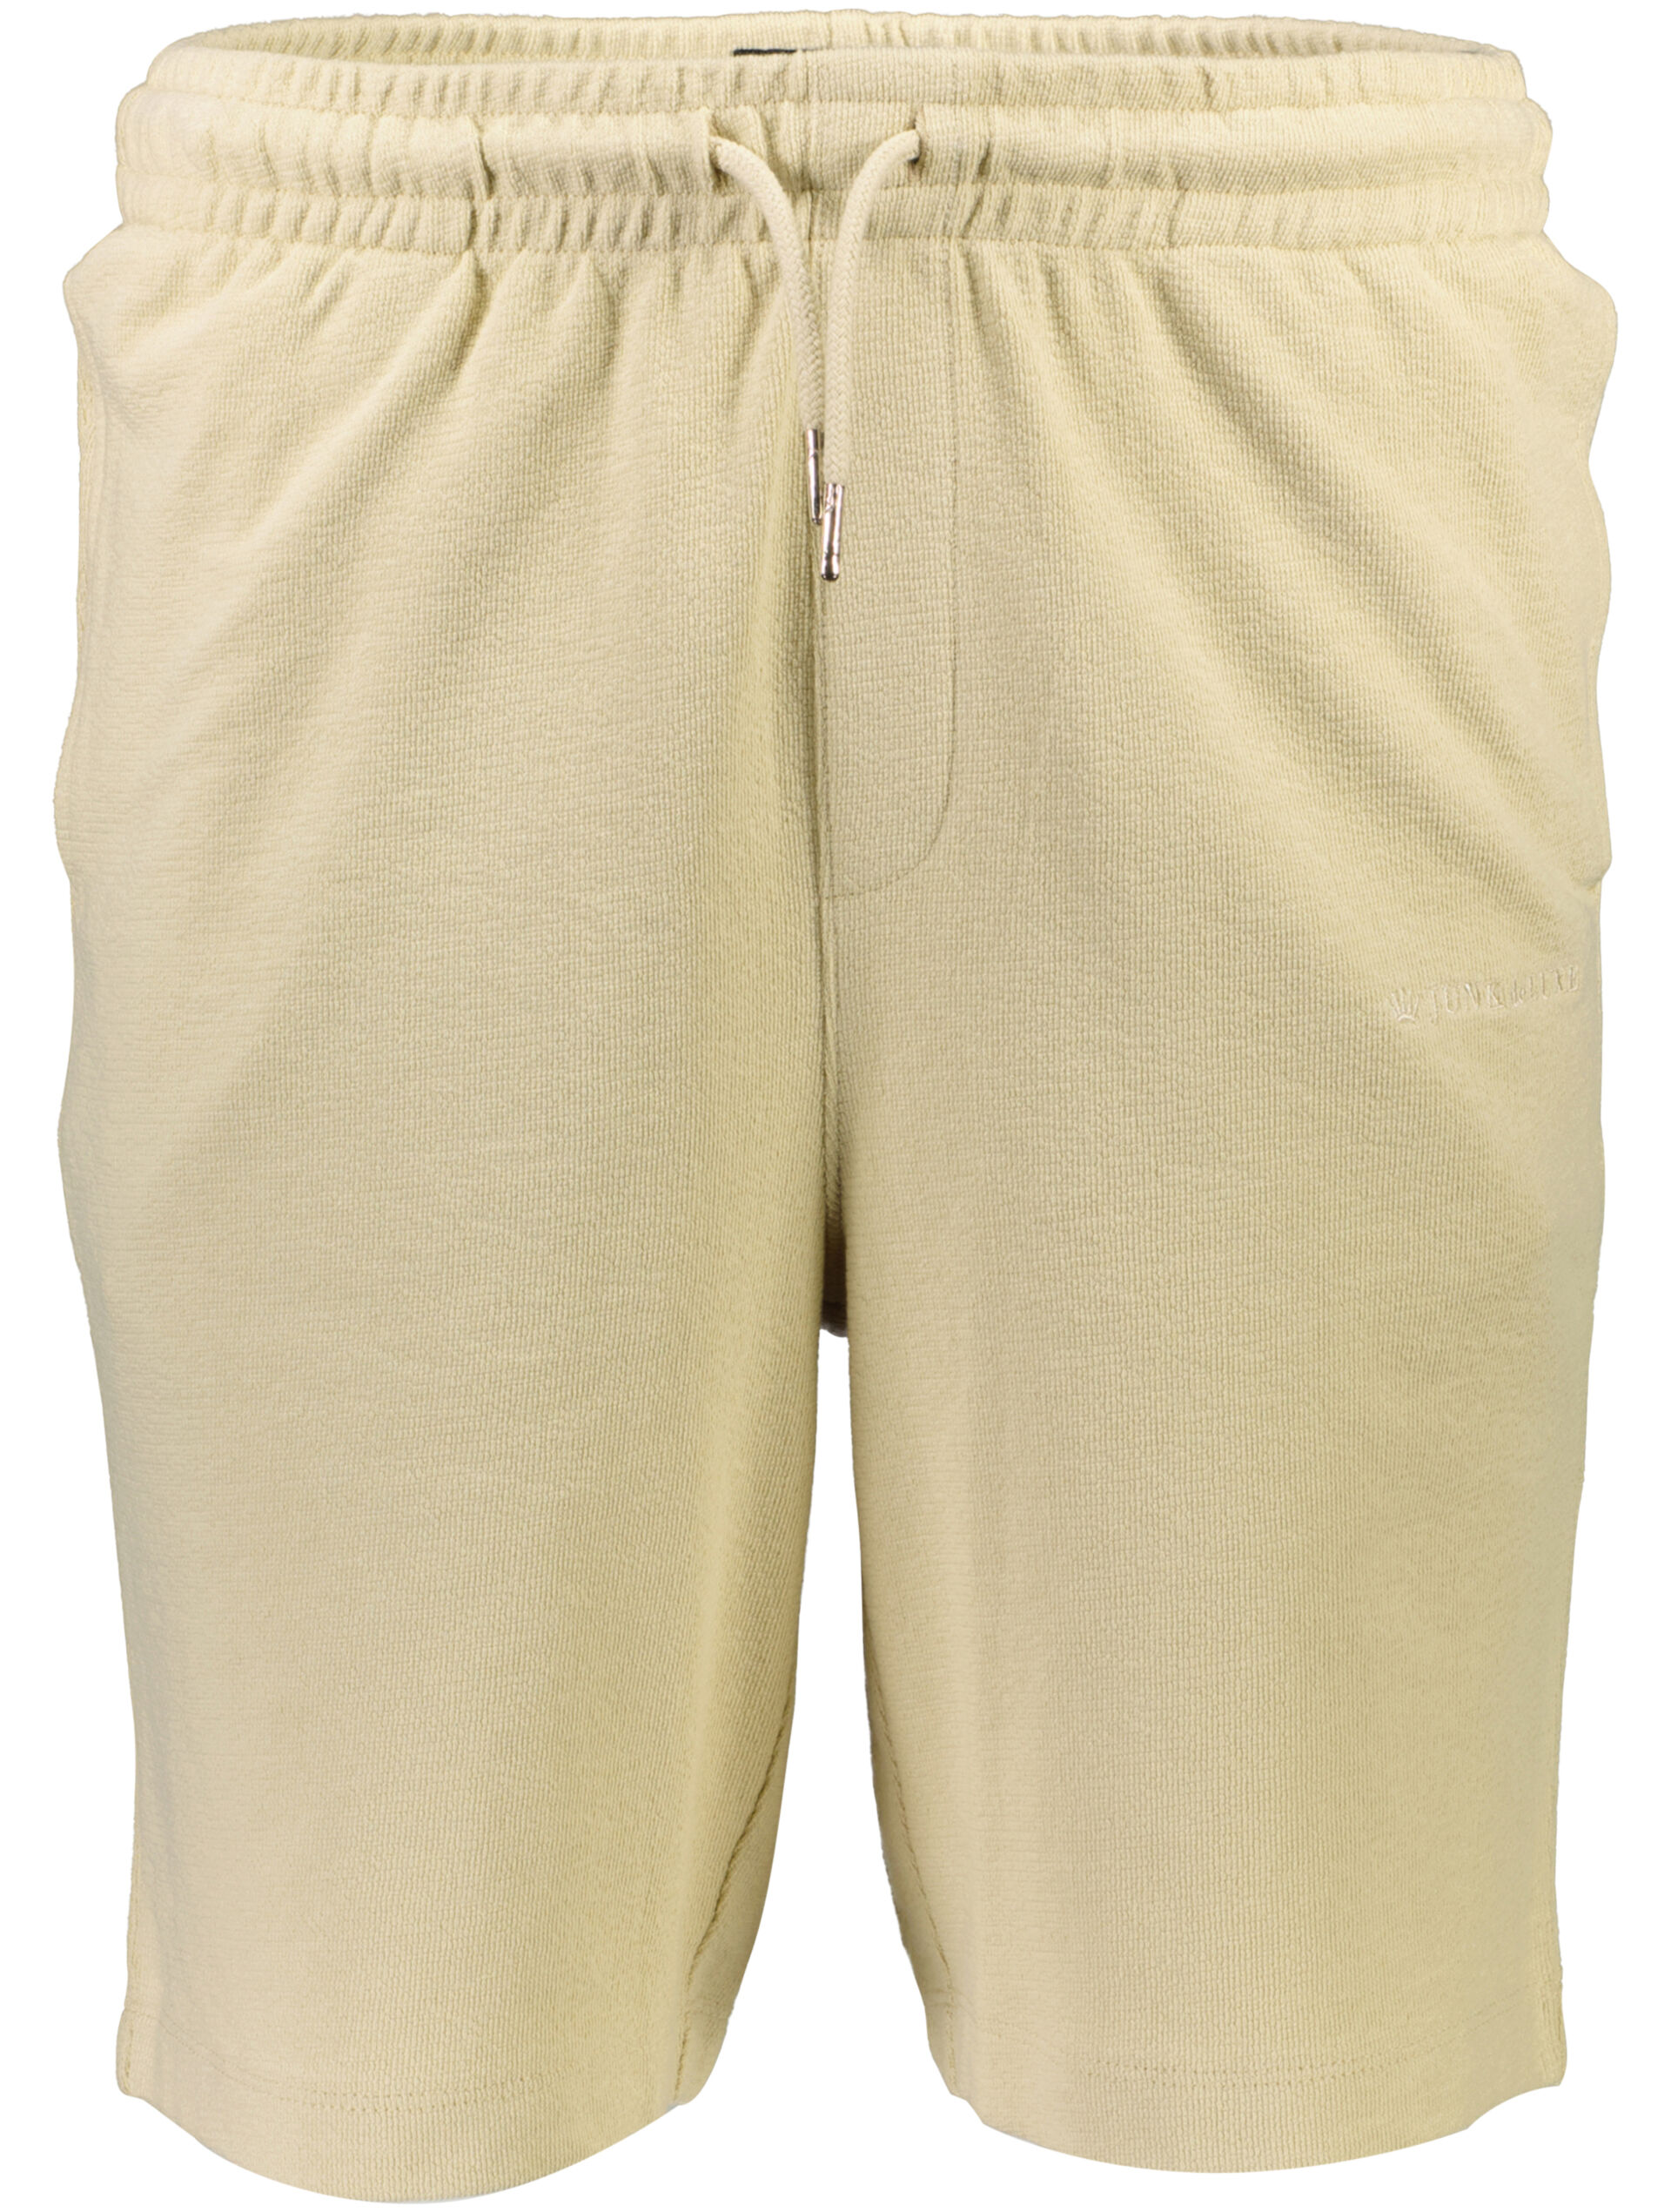 Casual shorts Casual shorts Sand 60-532040